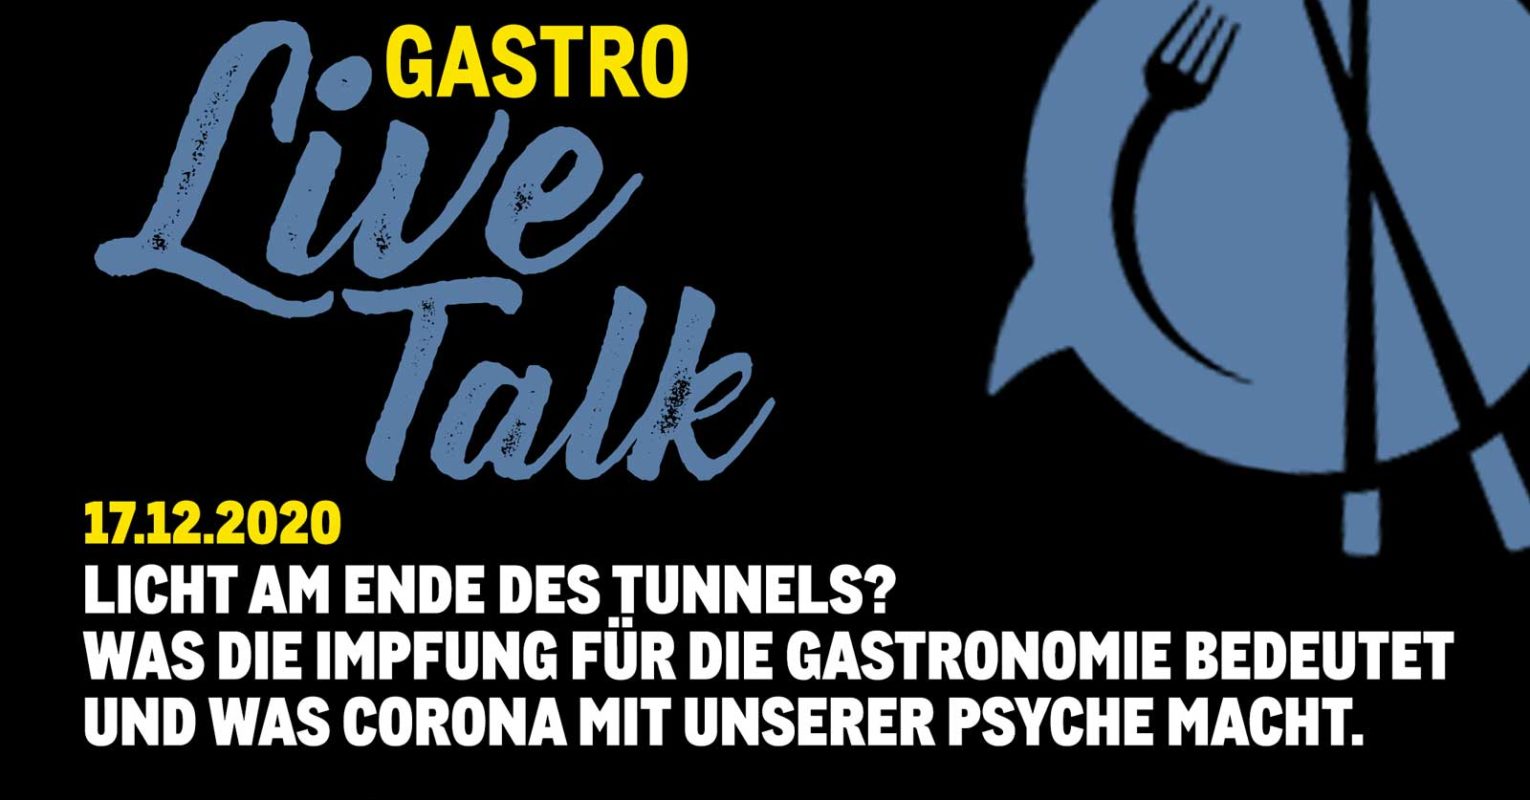 METRO: Am 17.12. startet Gastro-Live-Talk